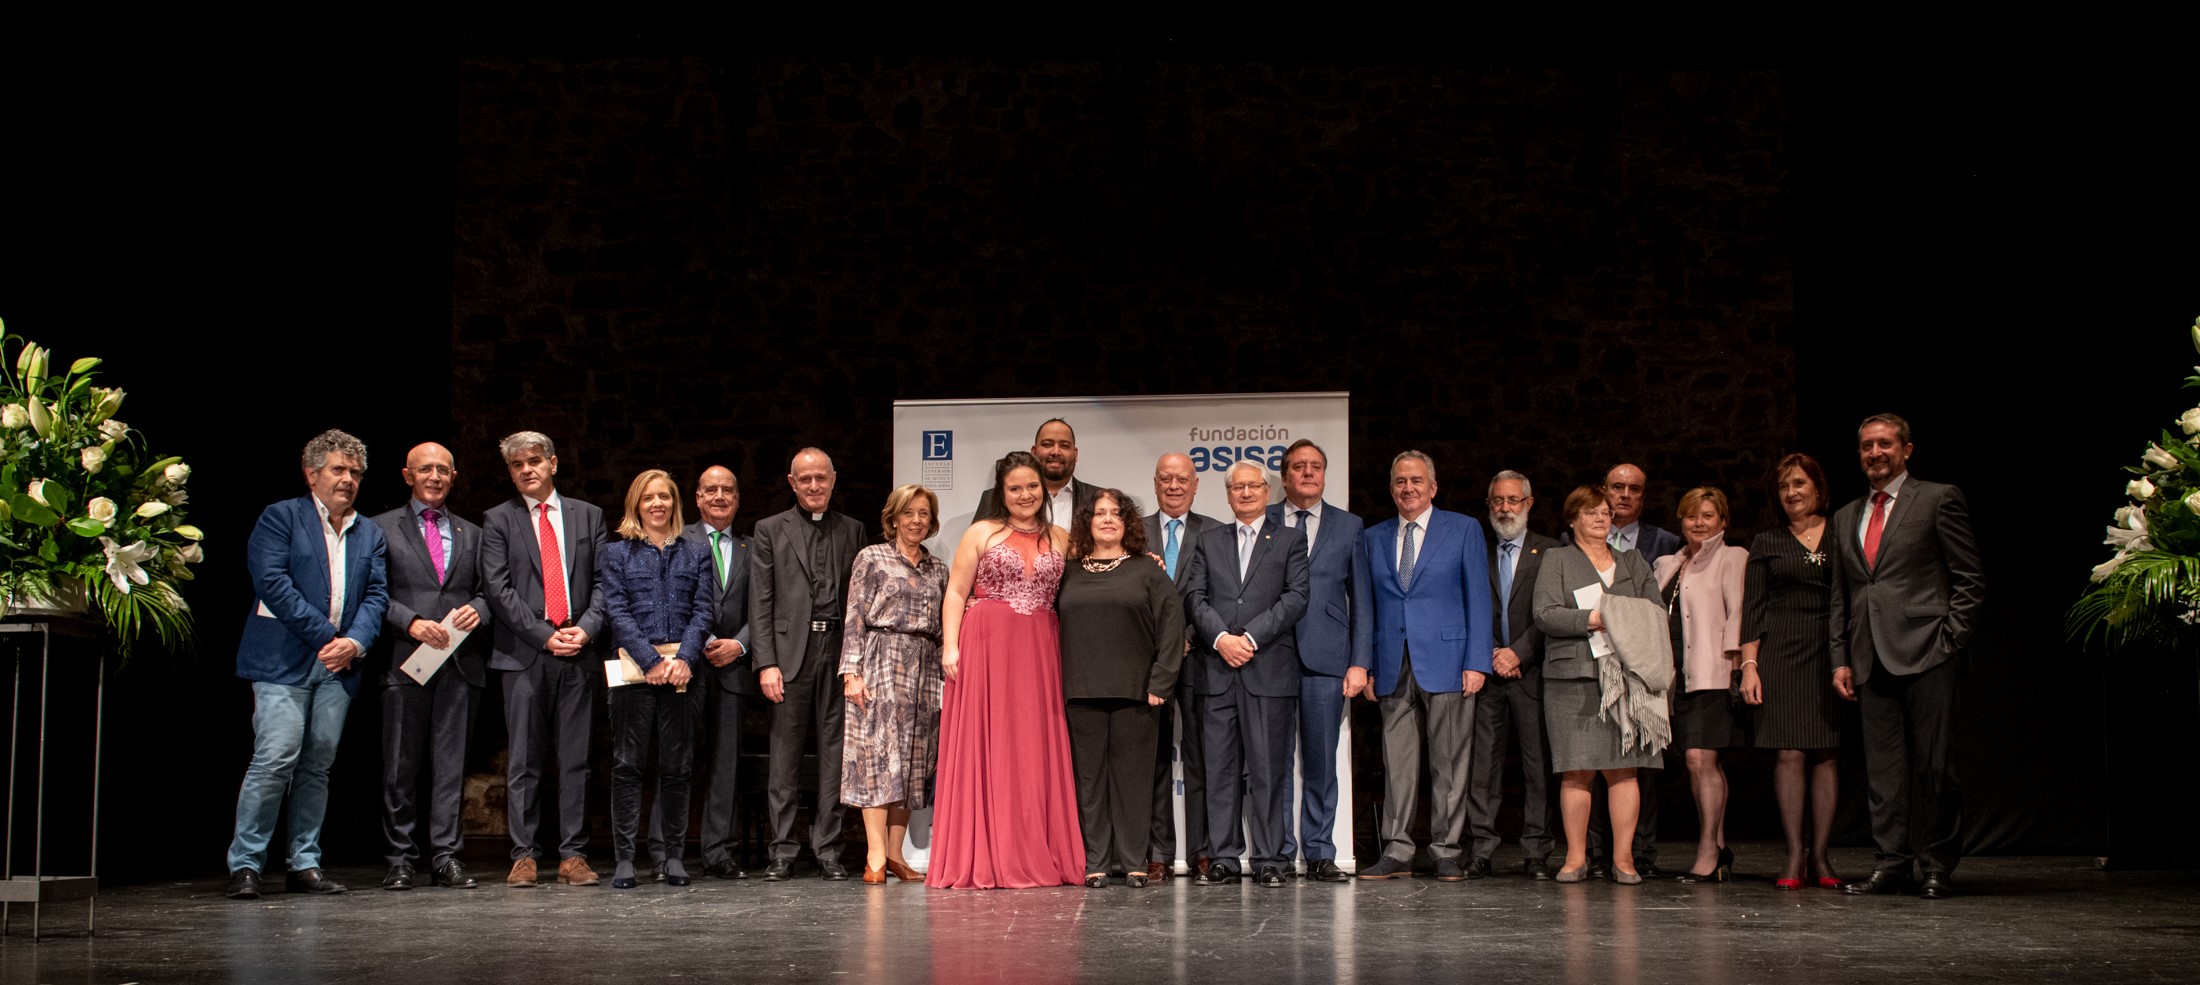 Fundación Asisa celebra en Cáceres un concierto de la Escuela Superior de Música Reina Sofía - Grupo Aseguranza